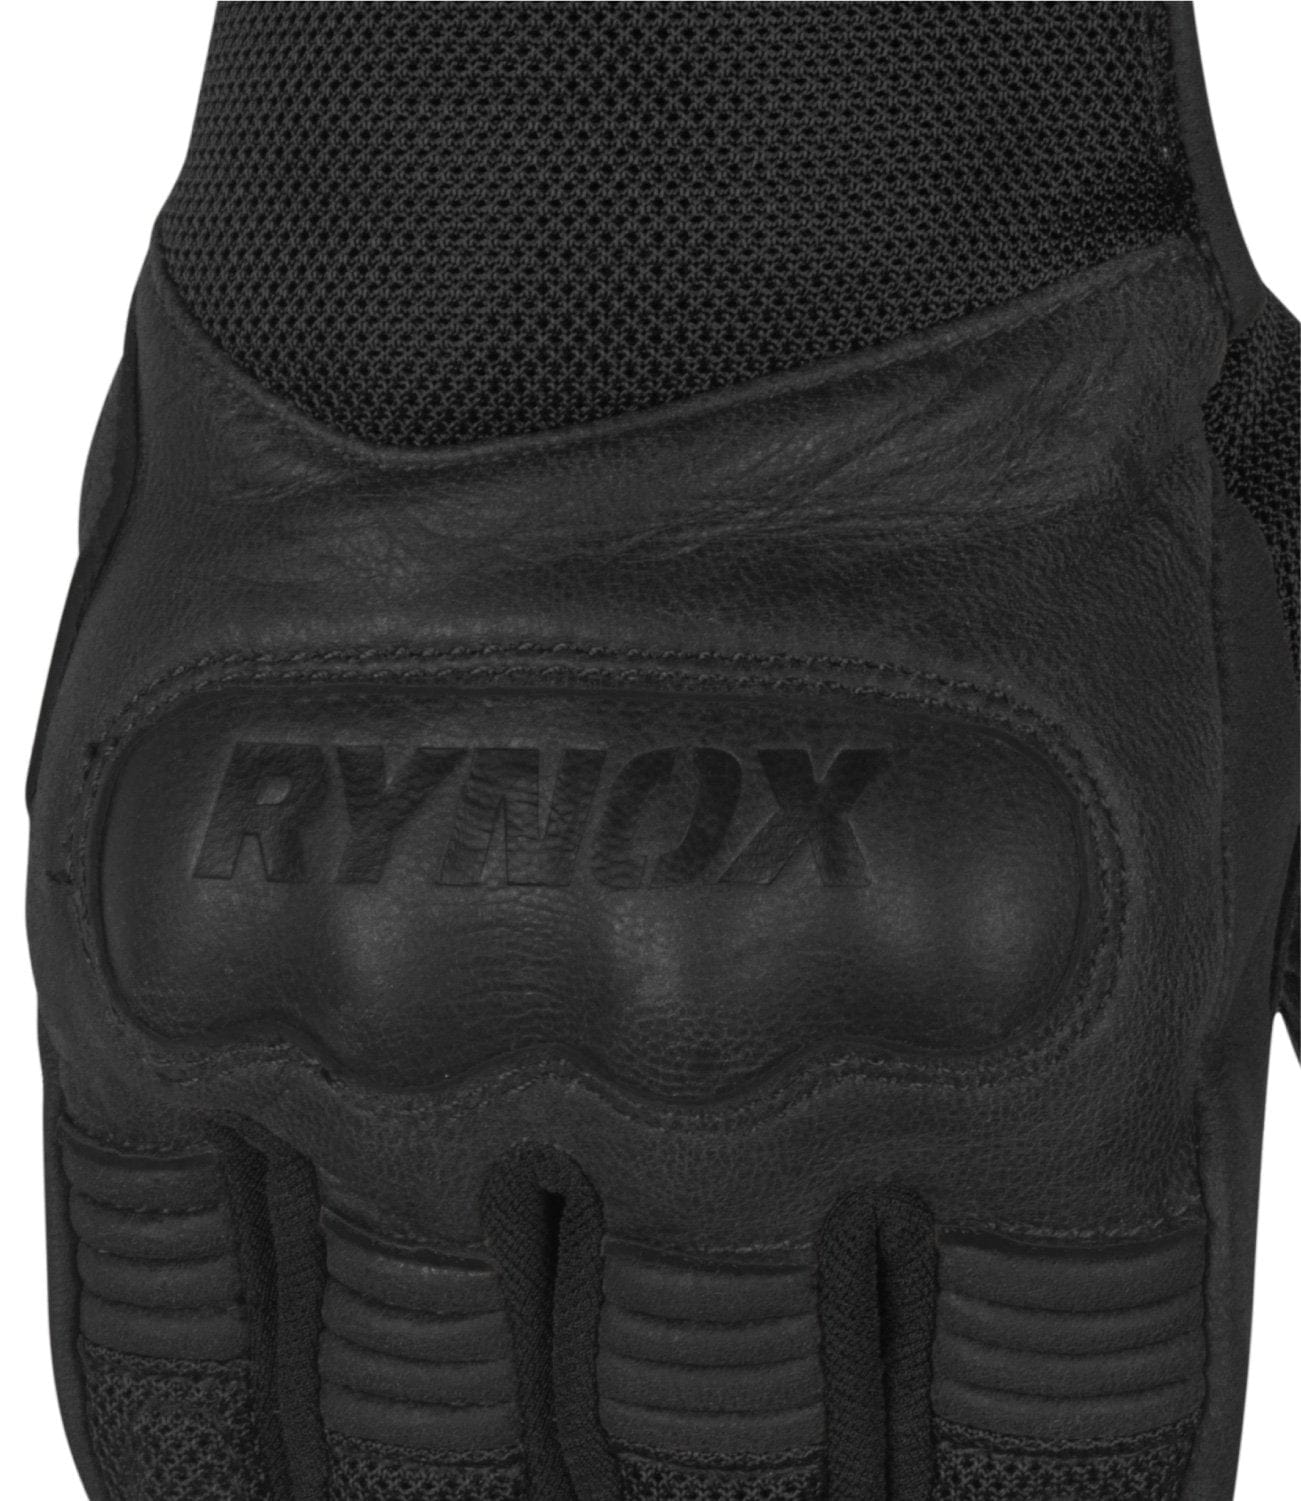 Rynox Urban Gloves Black - Destination Moto